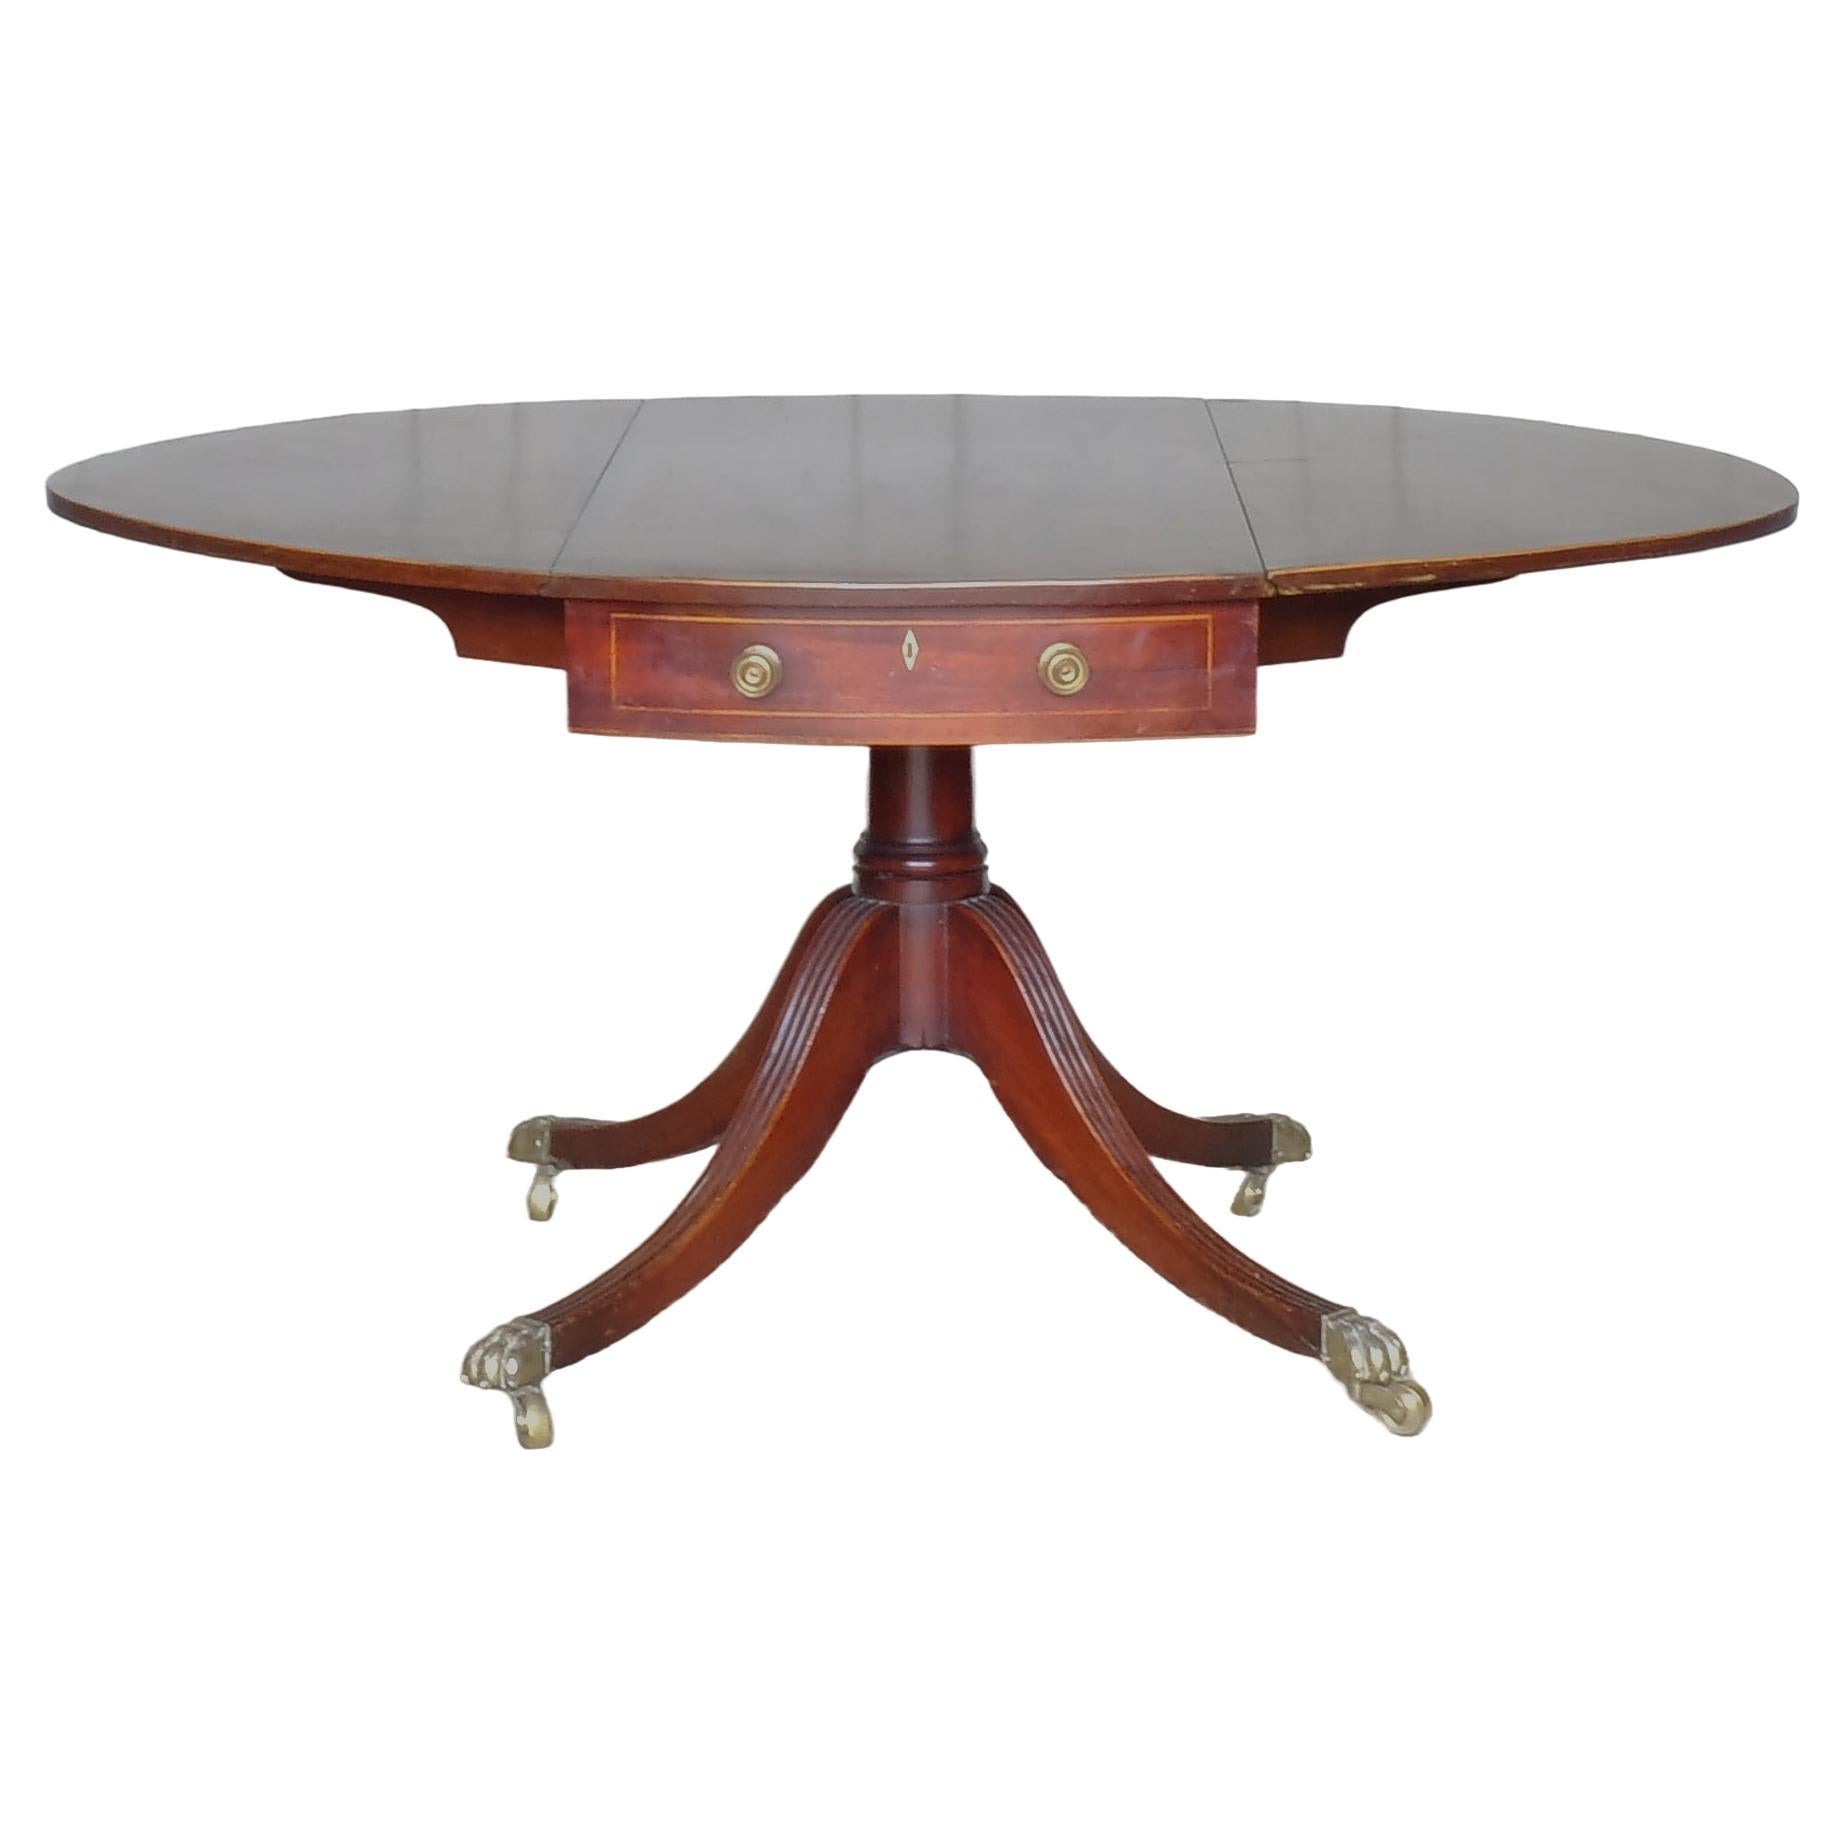 Ovaler Pembroke-Tisch aus der George-III-Zeit